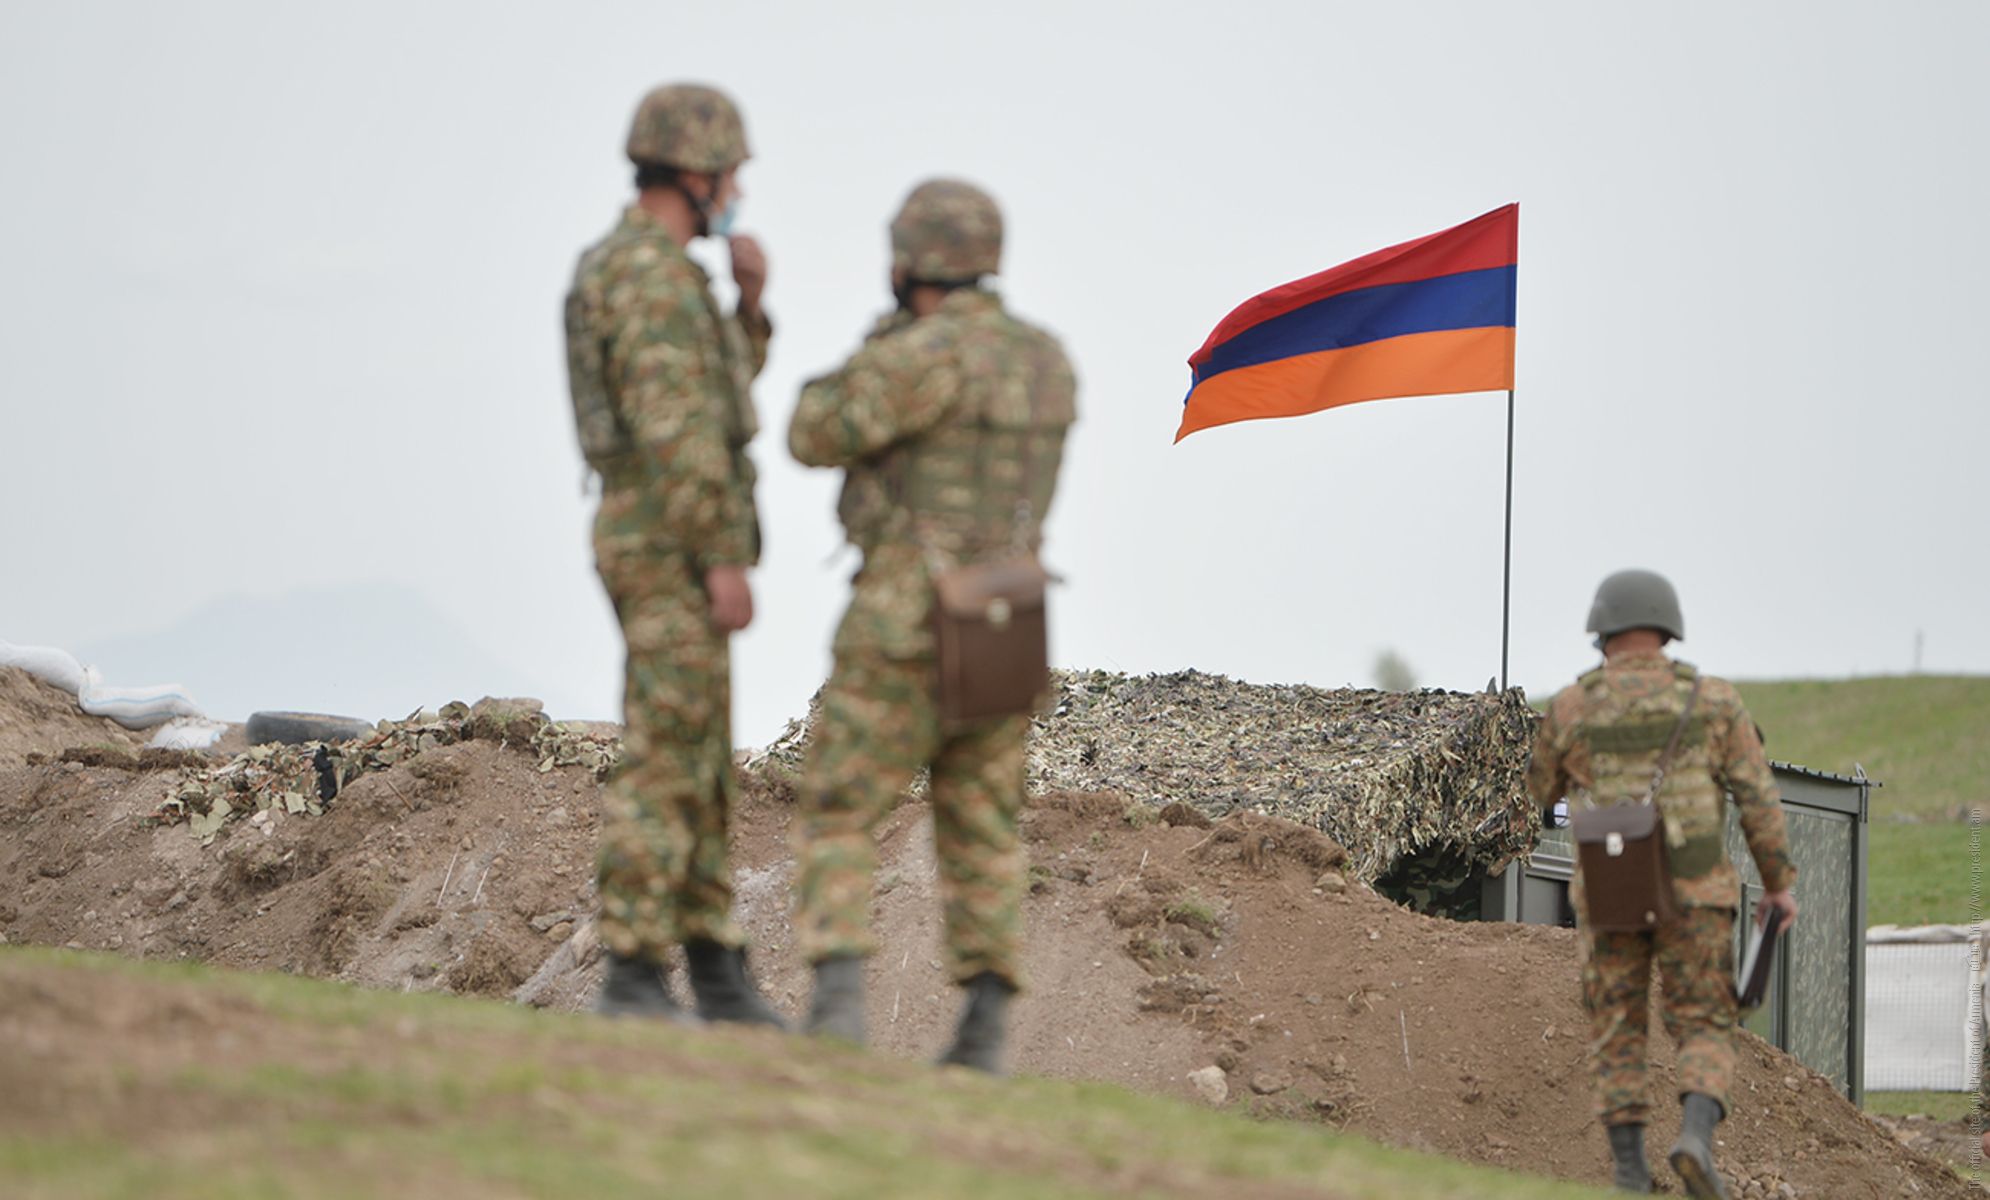 Демаркация границы между Арменией и Азербайджаном может привести к новой войне